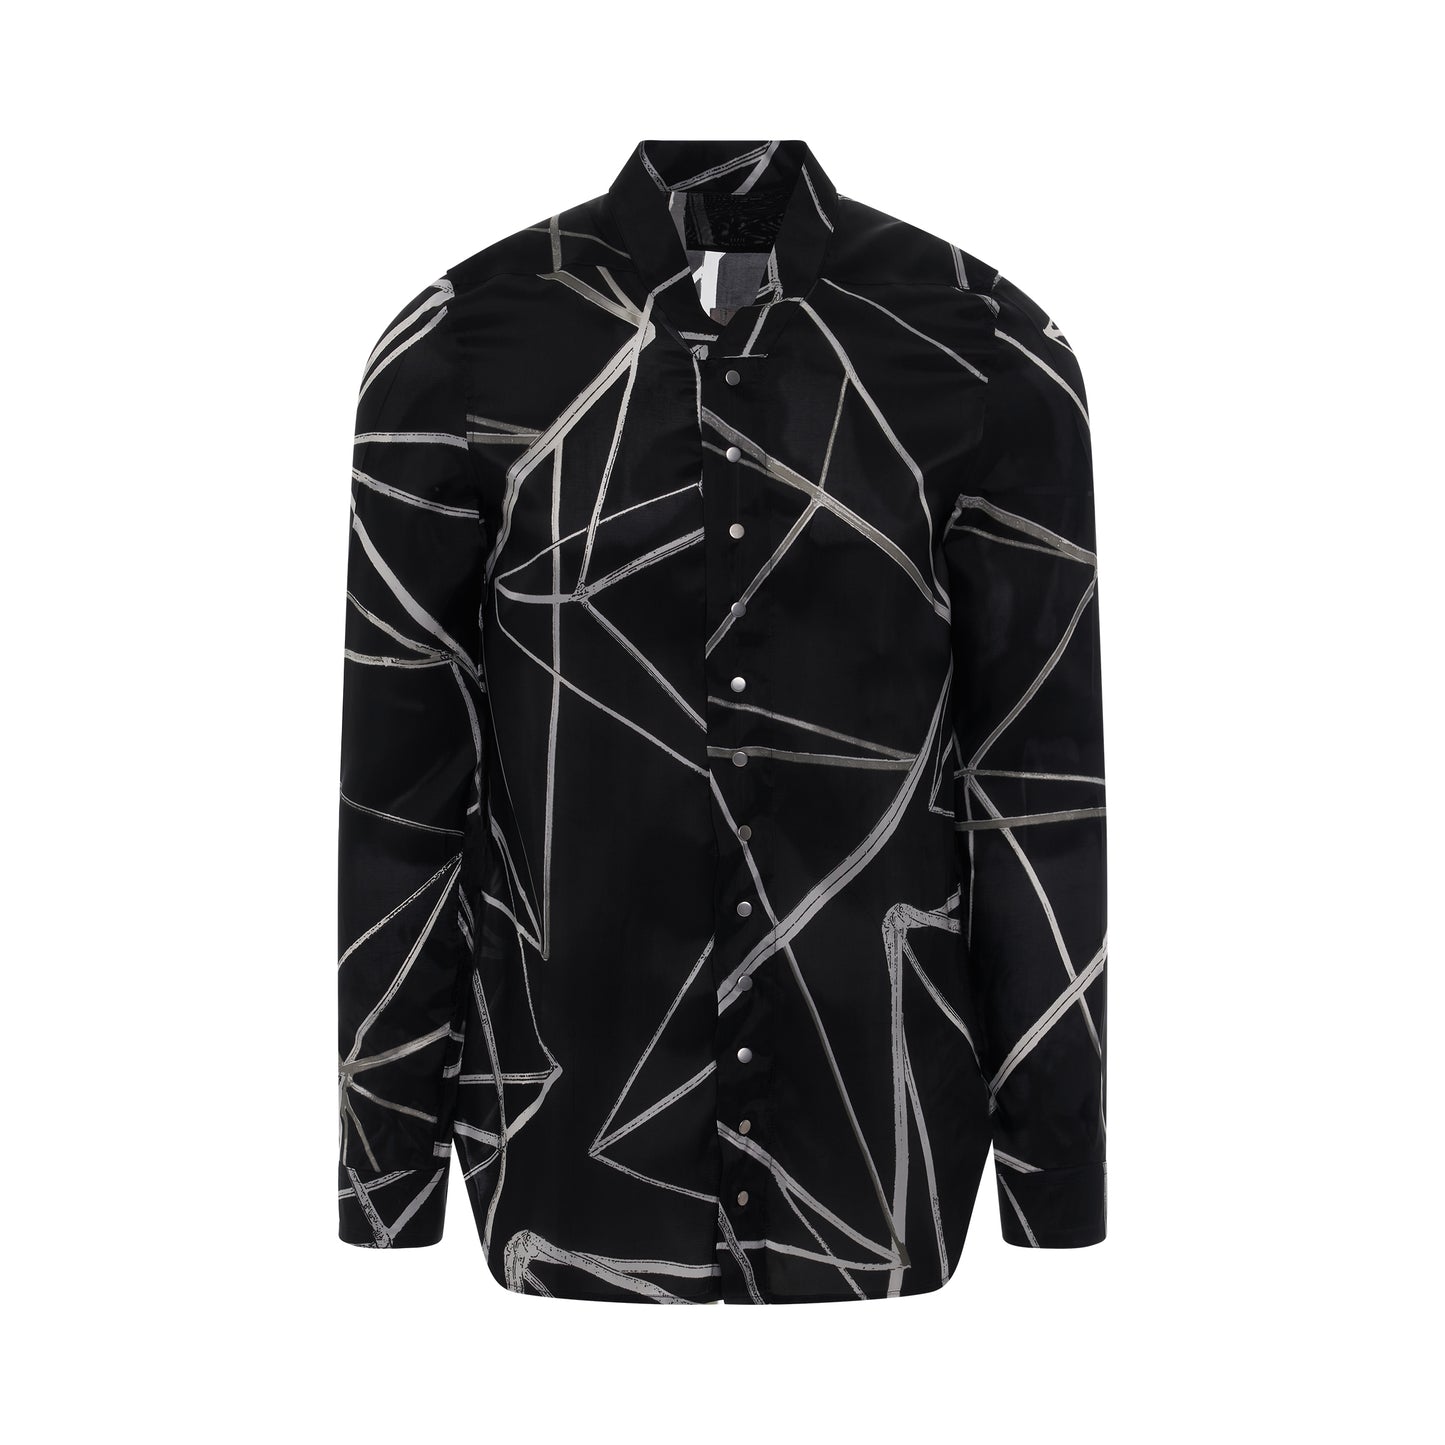 Snap Collar Faun Shirt in Black/Natural